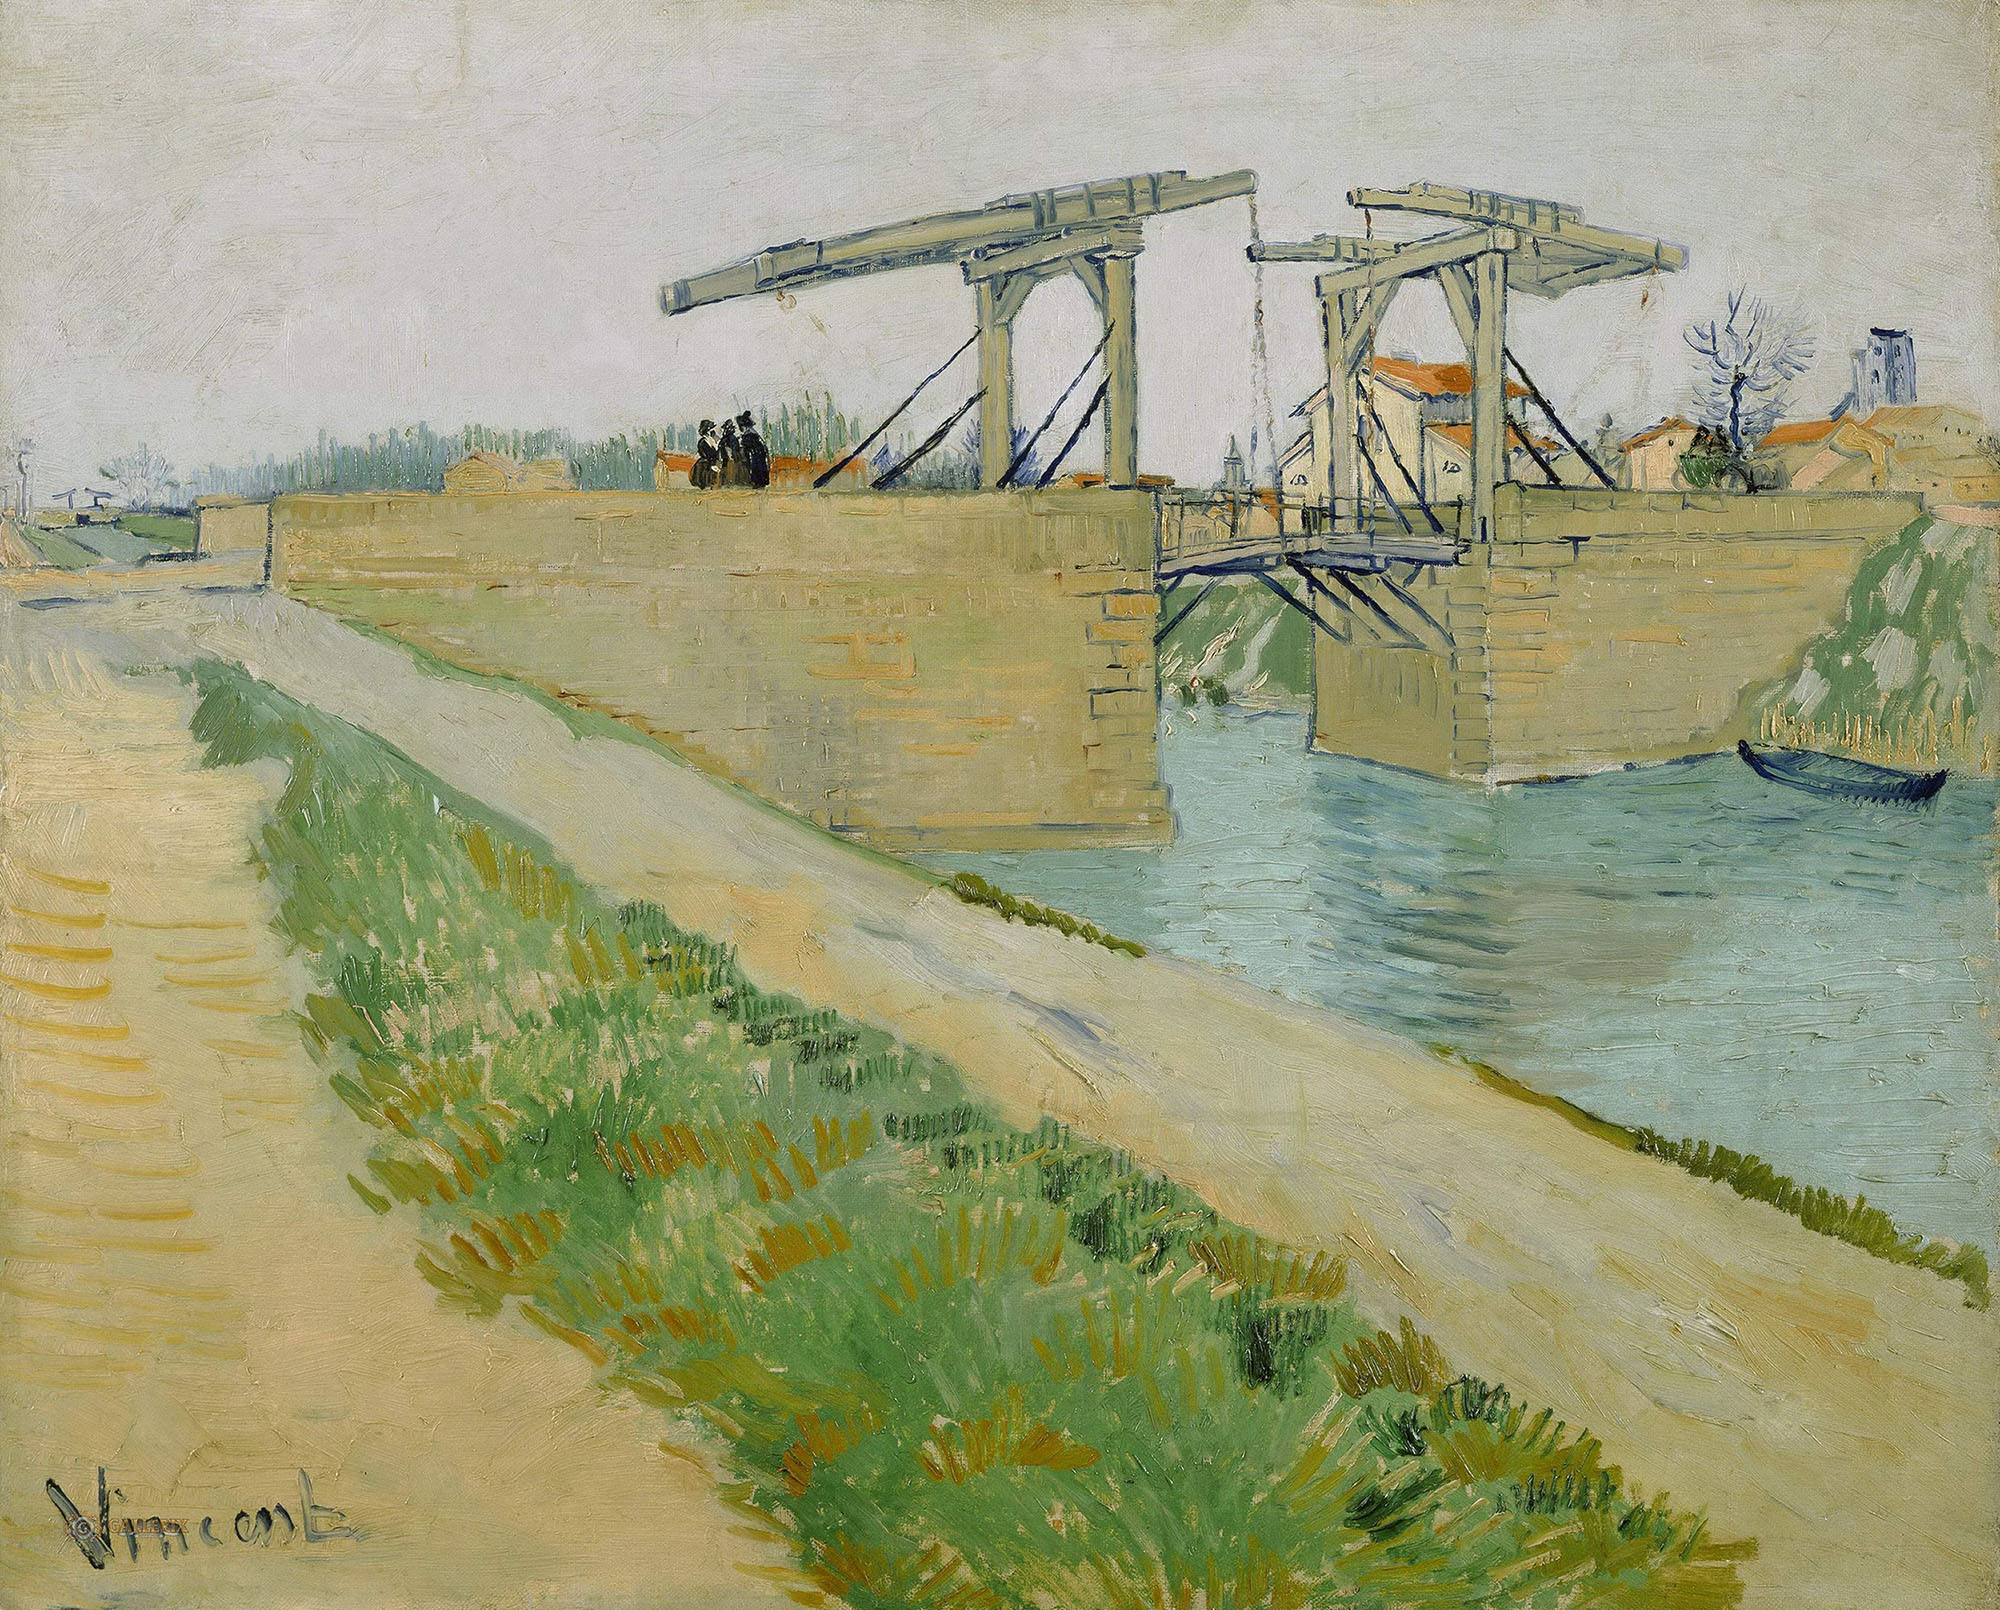 Винсент Ван Гог. "Мост Ланглуа в Арле с дорогой вдоль канала". 1888.